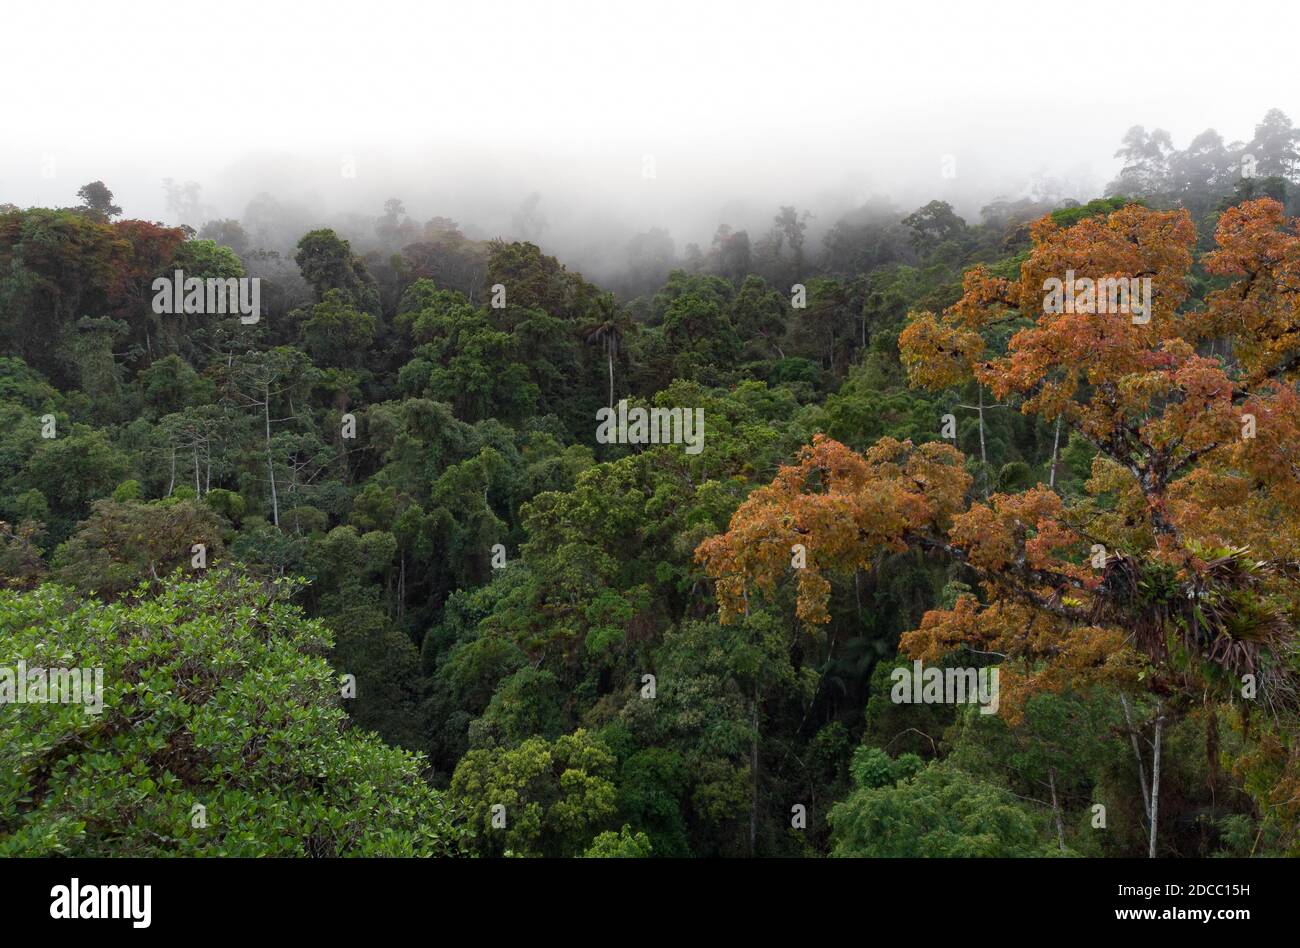 Forêt tropicale de l'Atlantique au niveau de la voûte avec un arbre Hymanaea courbaril dedans le premier plan Banque D'Images